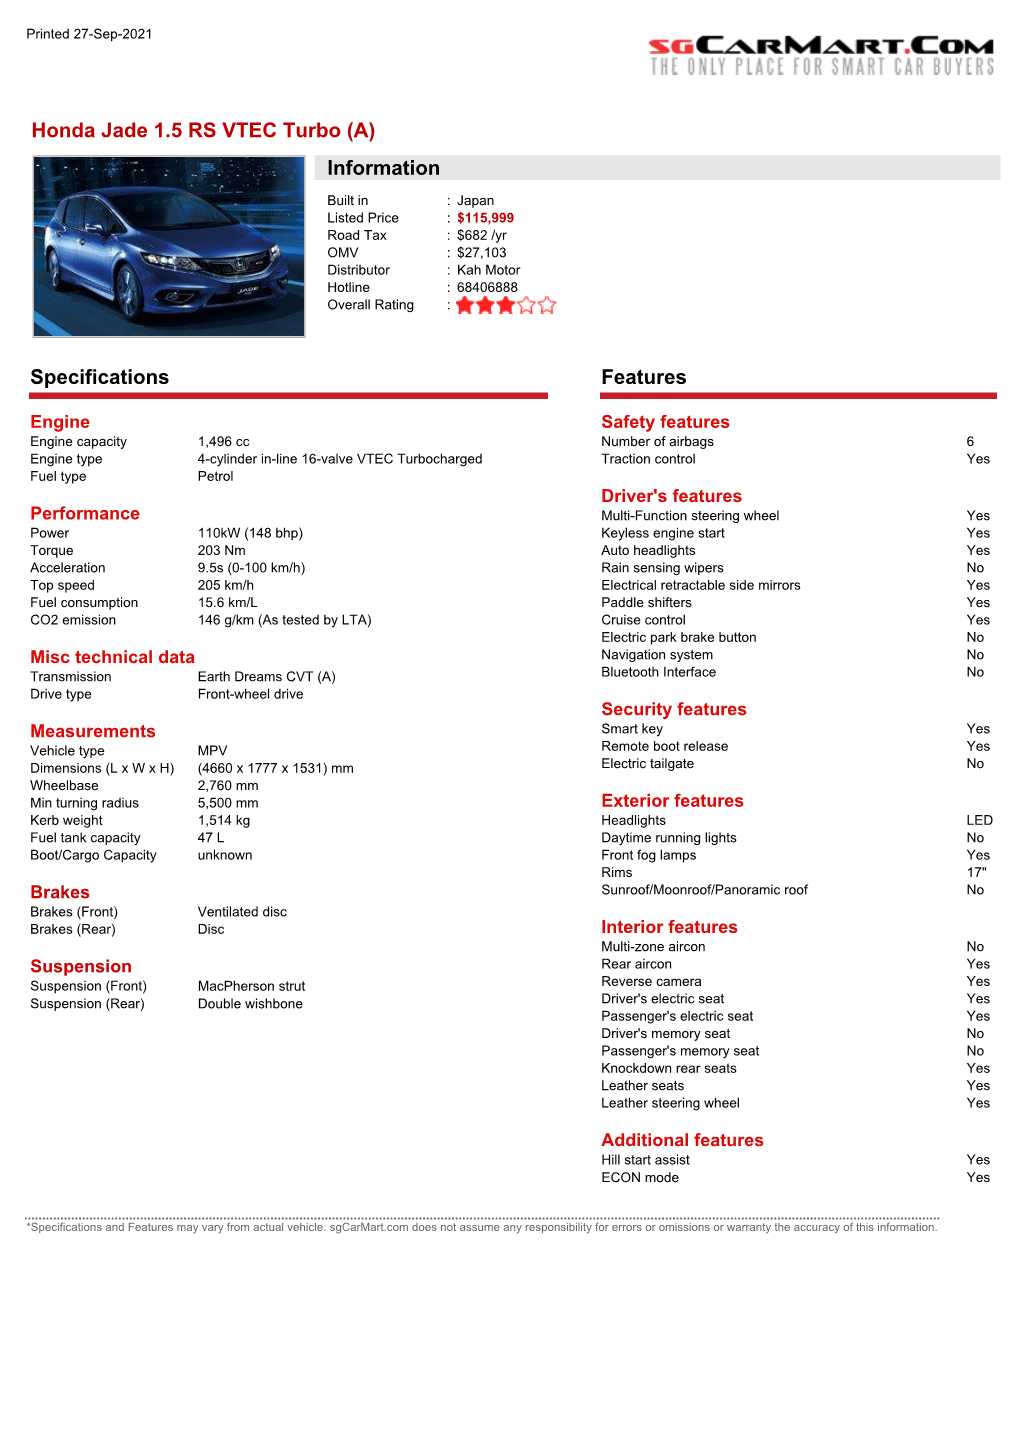 Honda Jade 1.5 RS VTEC Turbo (A) Information